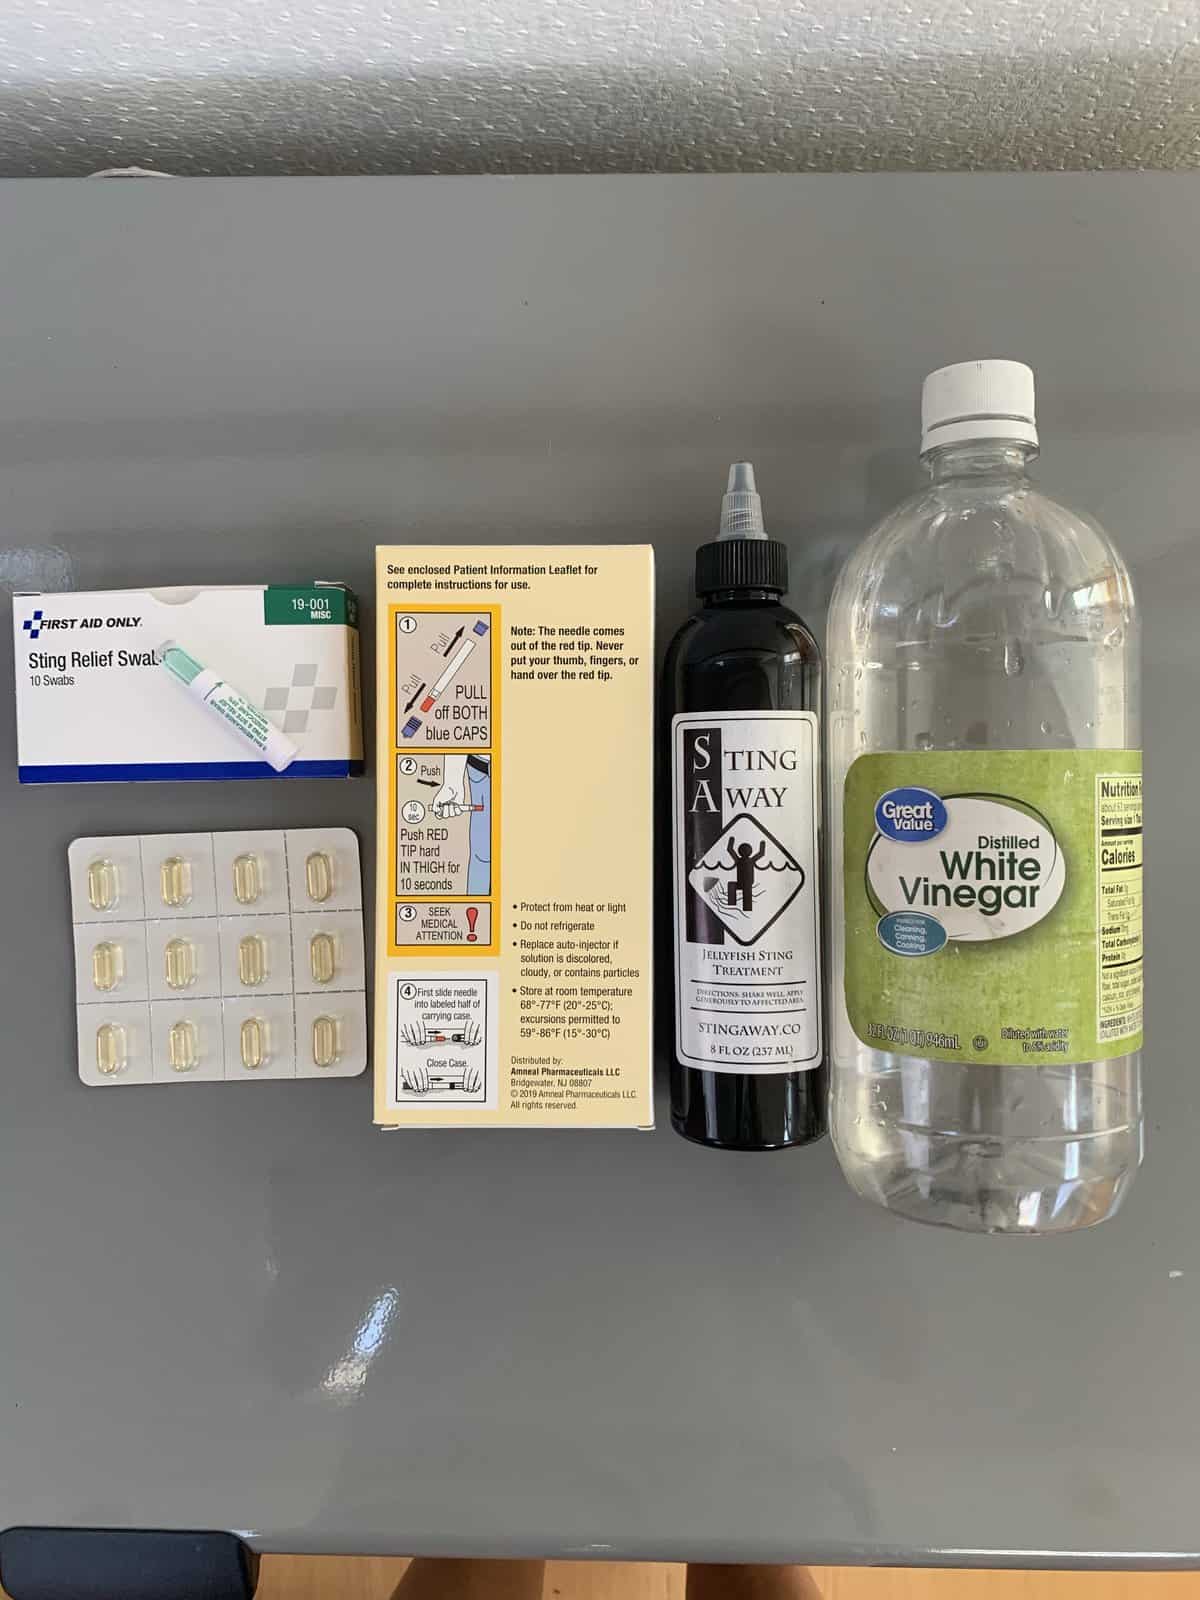 a display of anti-allergy supplies - sting relief, white vinegar, Benadryl, an epi pen